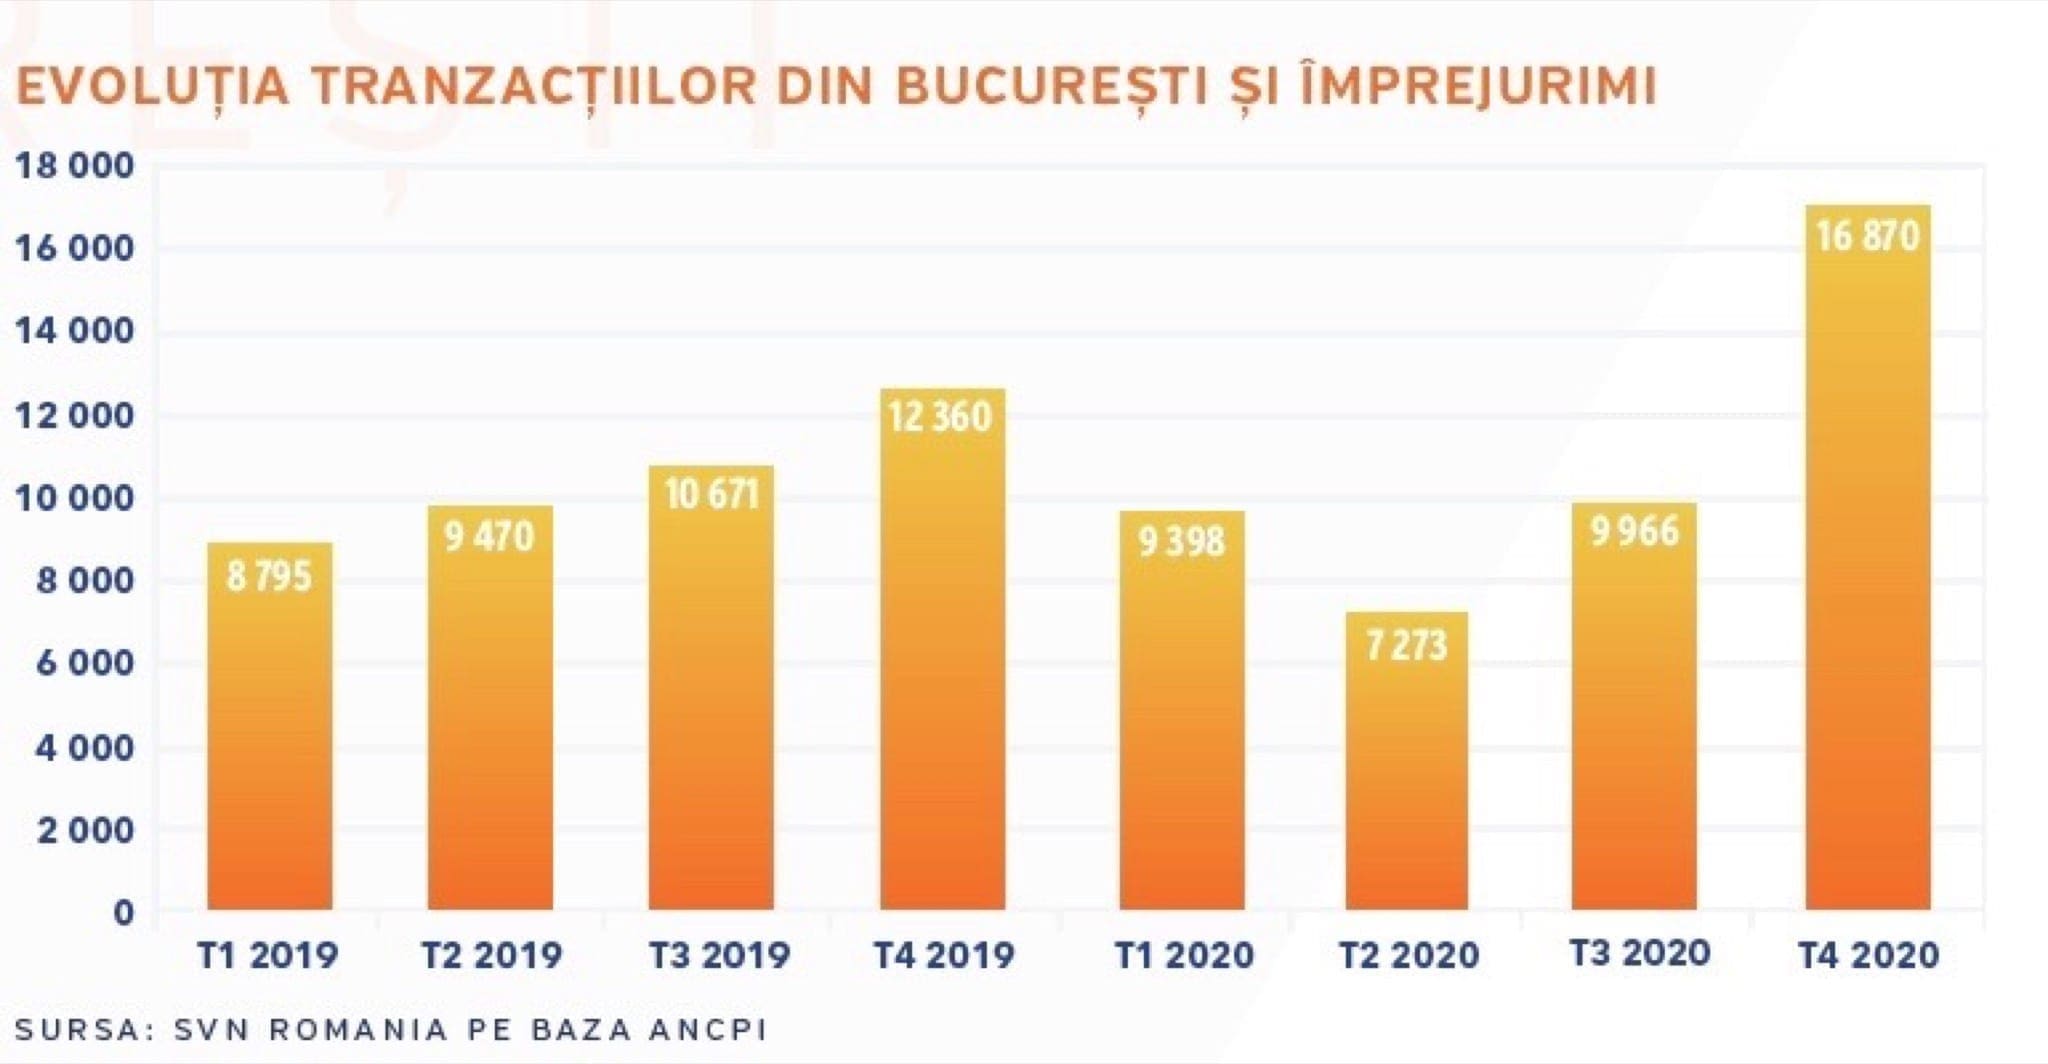 Locuinte - Agenție: Prețurile locuințelor din București vor crește cu până la 7% în 2021